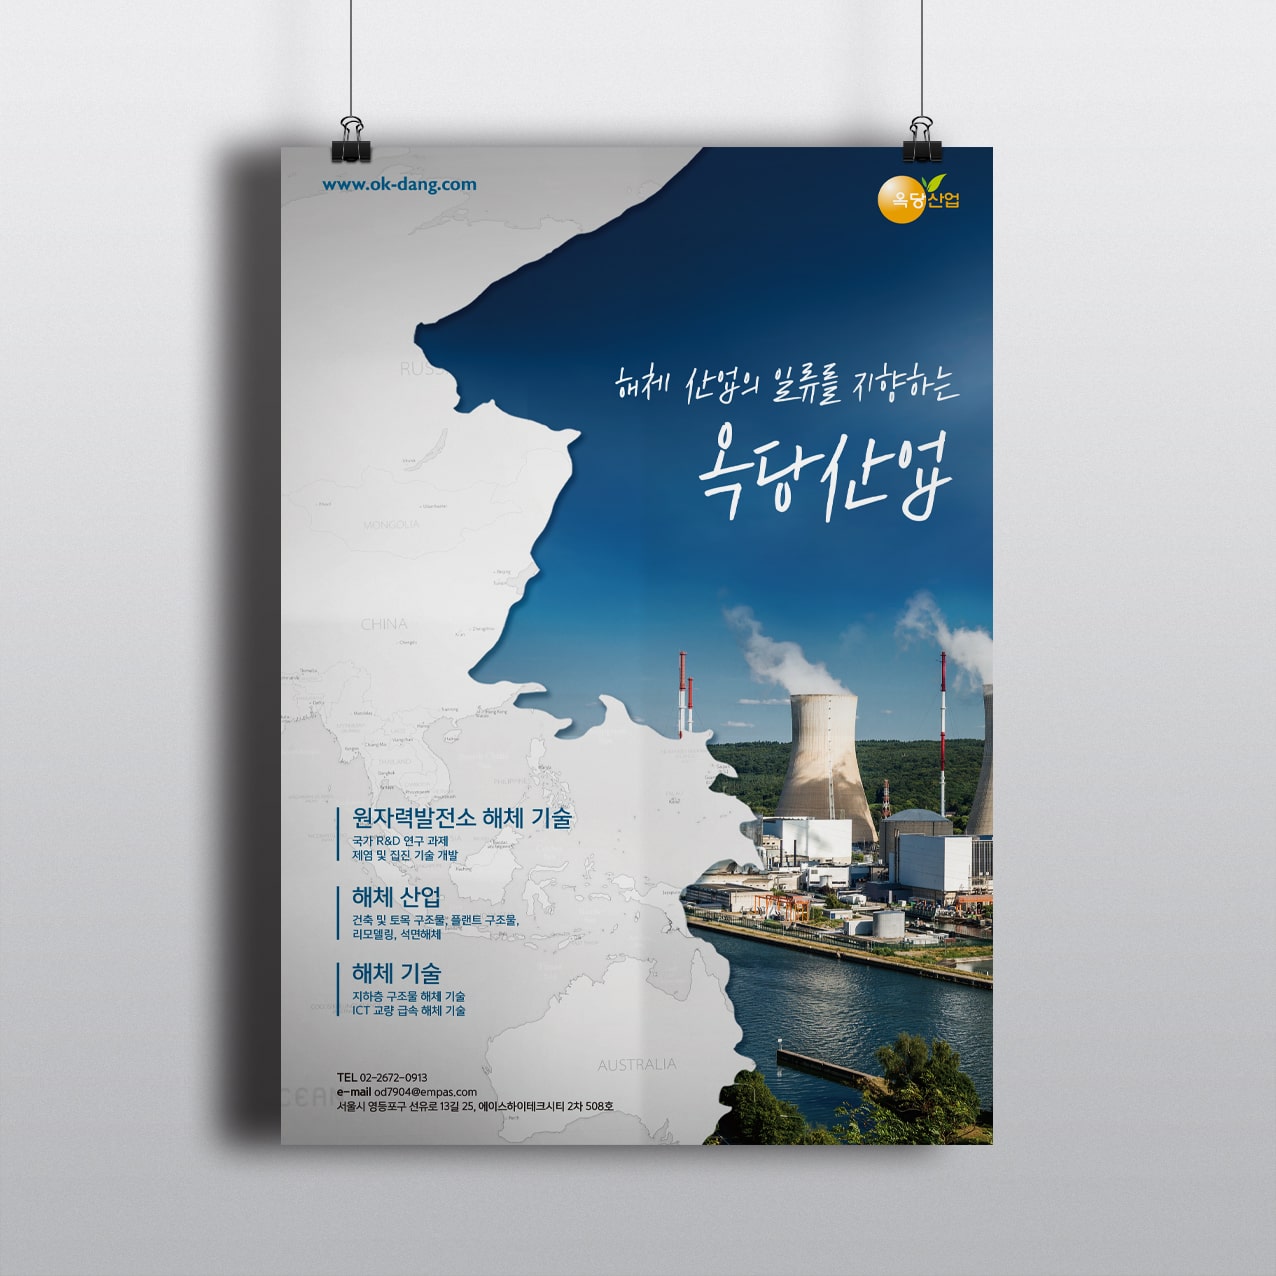 해체 산업의 일류를 지향하는 옥당산업 포스터 디자인 시안 - 옥당산업 (원자력 발전소 해체산업 기술 전문 기업)